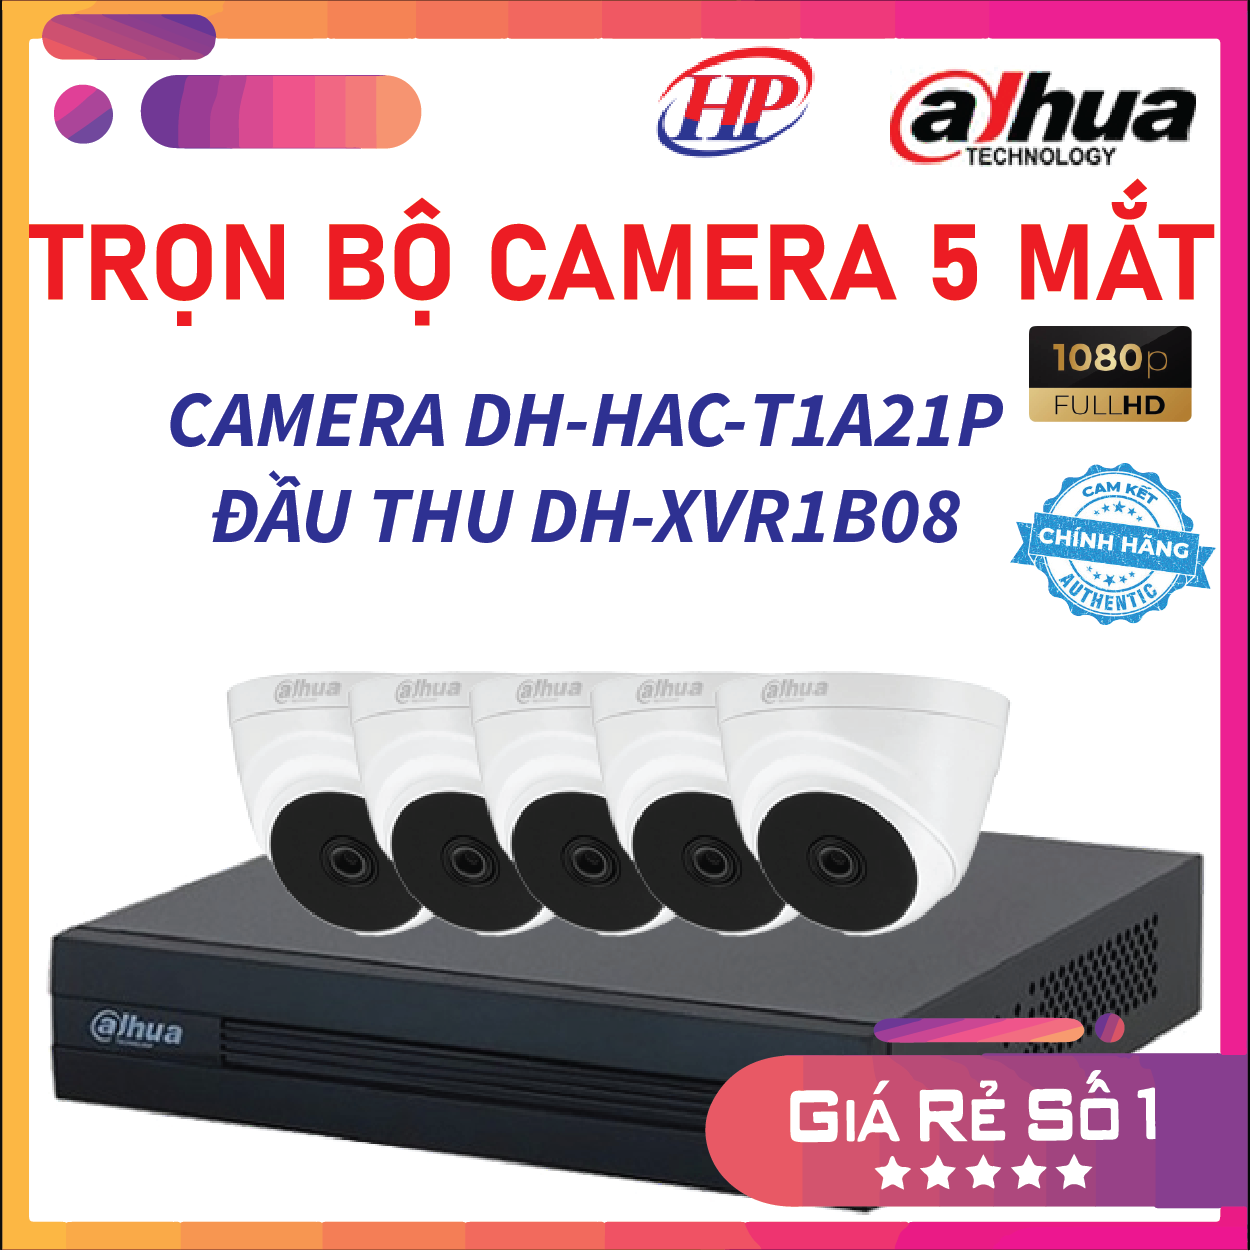 Trọn bộ 5 camera DH-HAC-T1A21P Đầu thu 8 cổng XVR1B08 đầy đủ phụ kiện, Hàng chính hãng